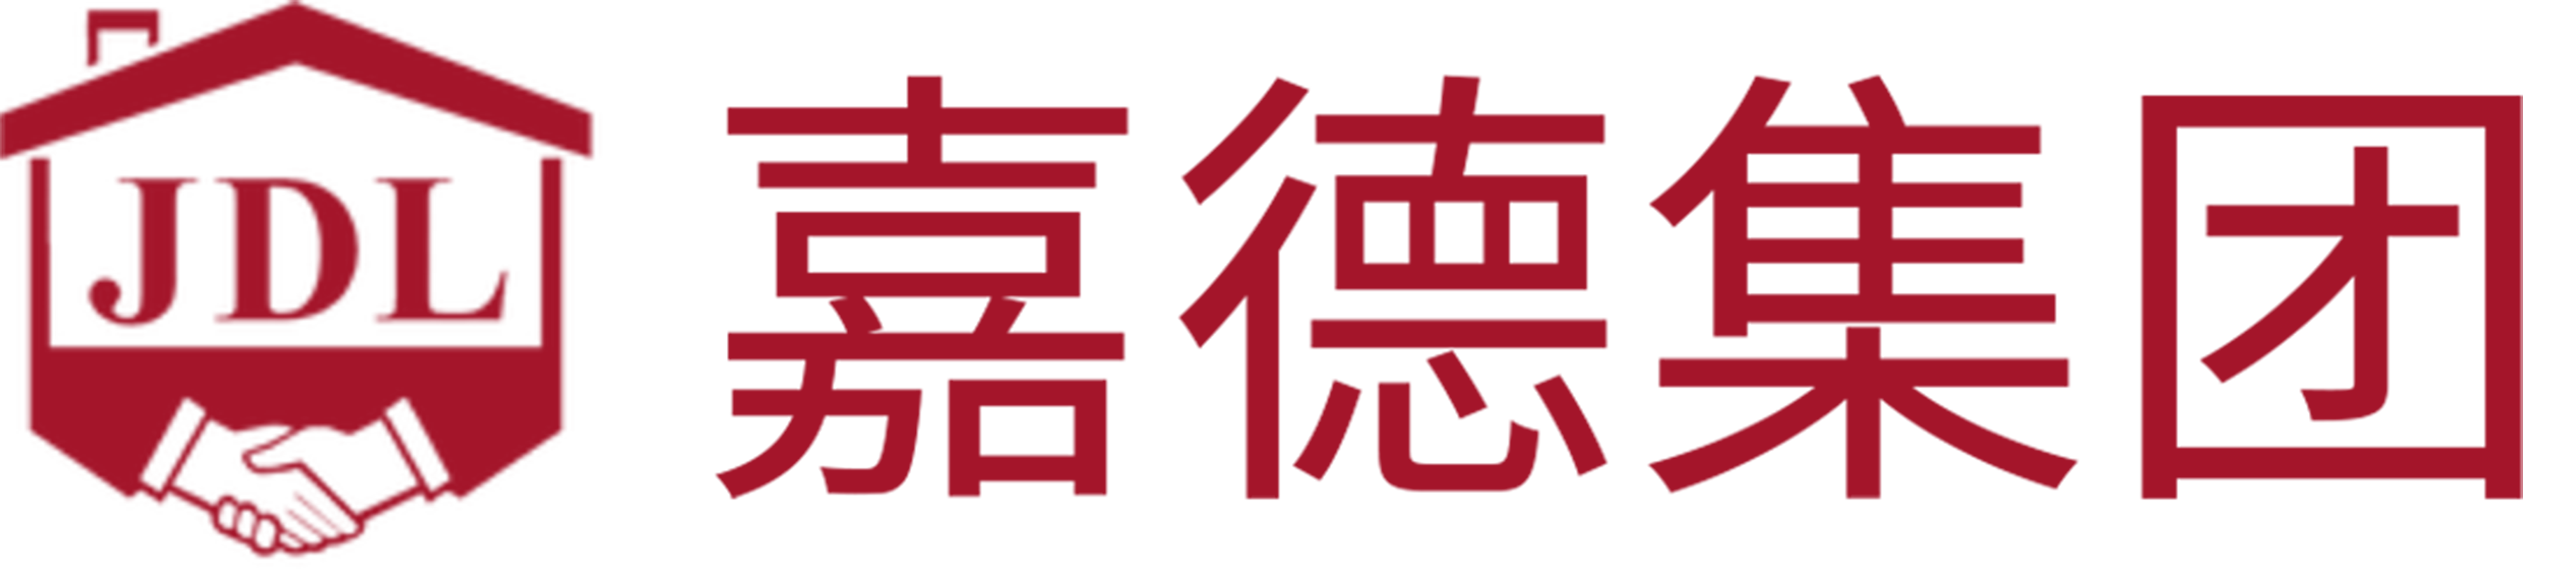 嘉德集团 Logo